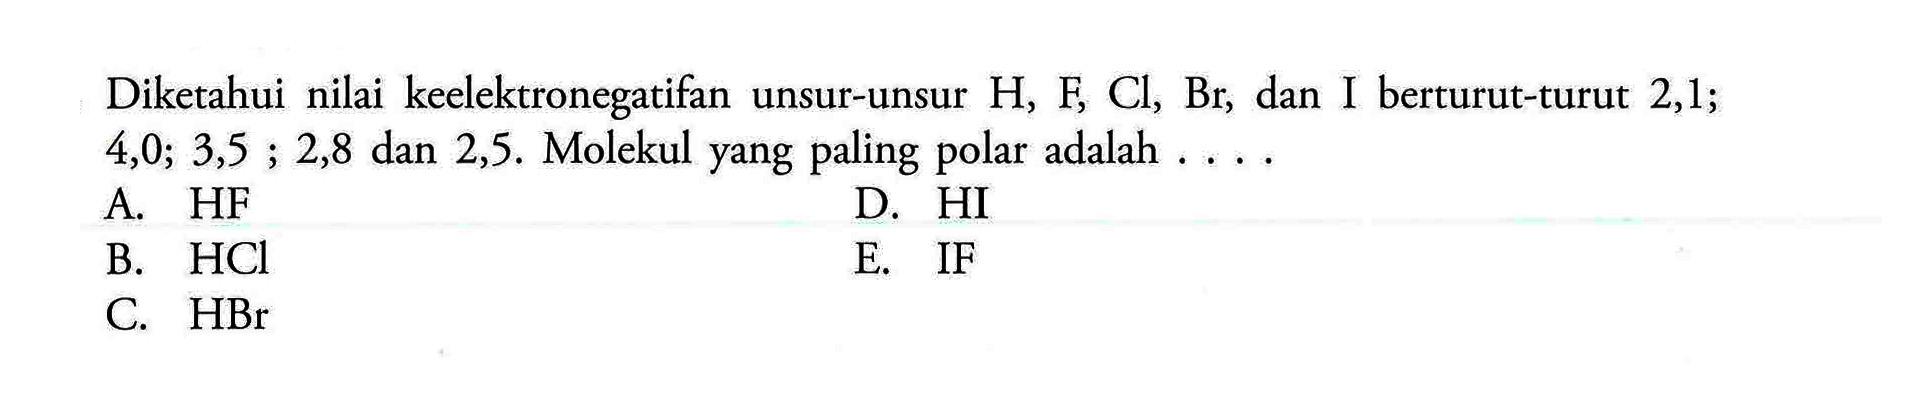 Diketahui nilai keelektronegatifan unsur-unsur  H, F, Cl, Br , dan I berturut-turut 2,1 ; 4, 0 ; 3,5 ; 2,8  dan  2,5 .  Molekul yang paling polar adalah . ...A. HF B.  HCl C.  HBr  D. HI E. IF